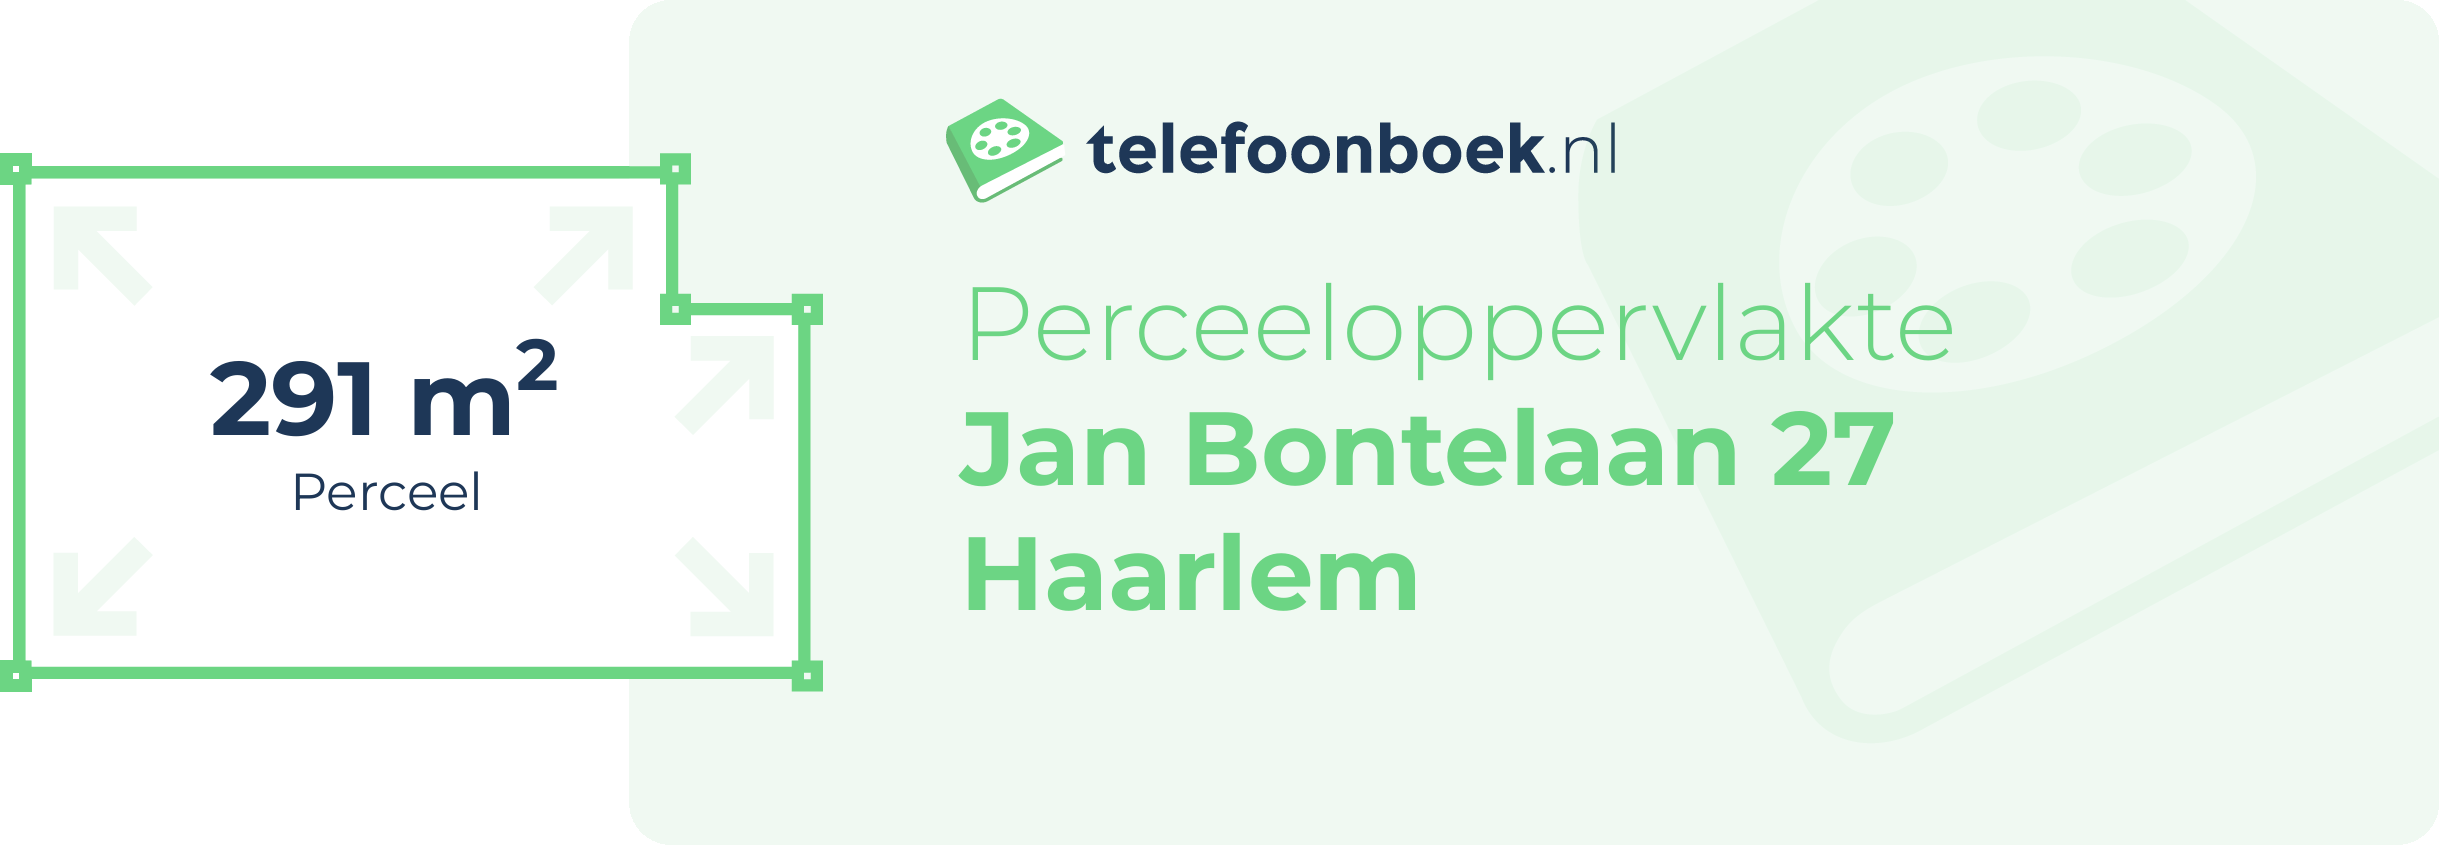 Perceeloppervlakte Jan Bontelaan 27 Haarlem